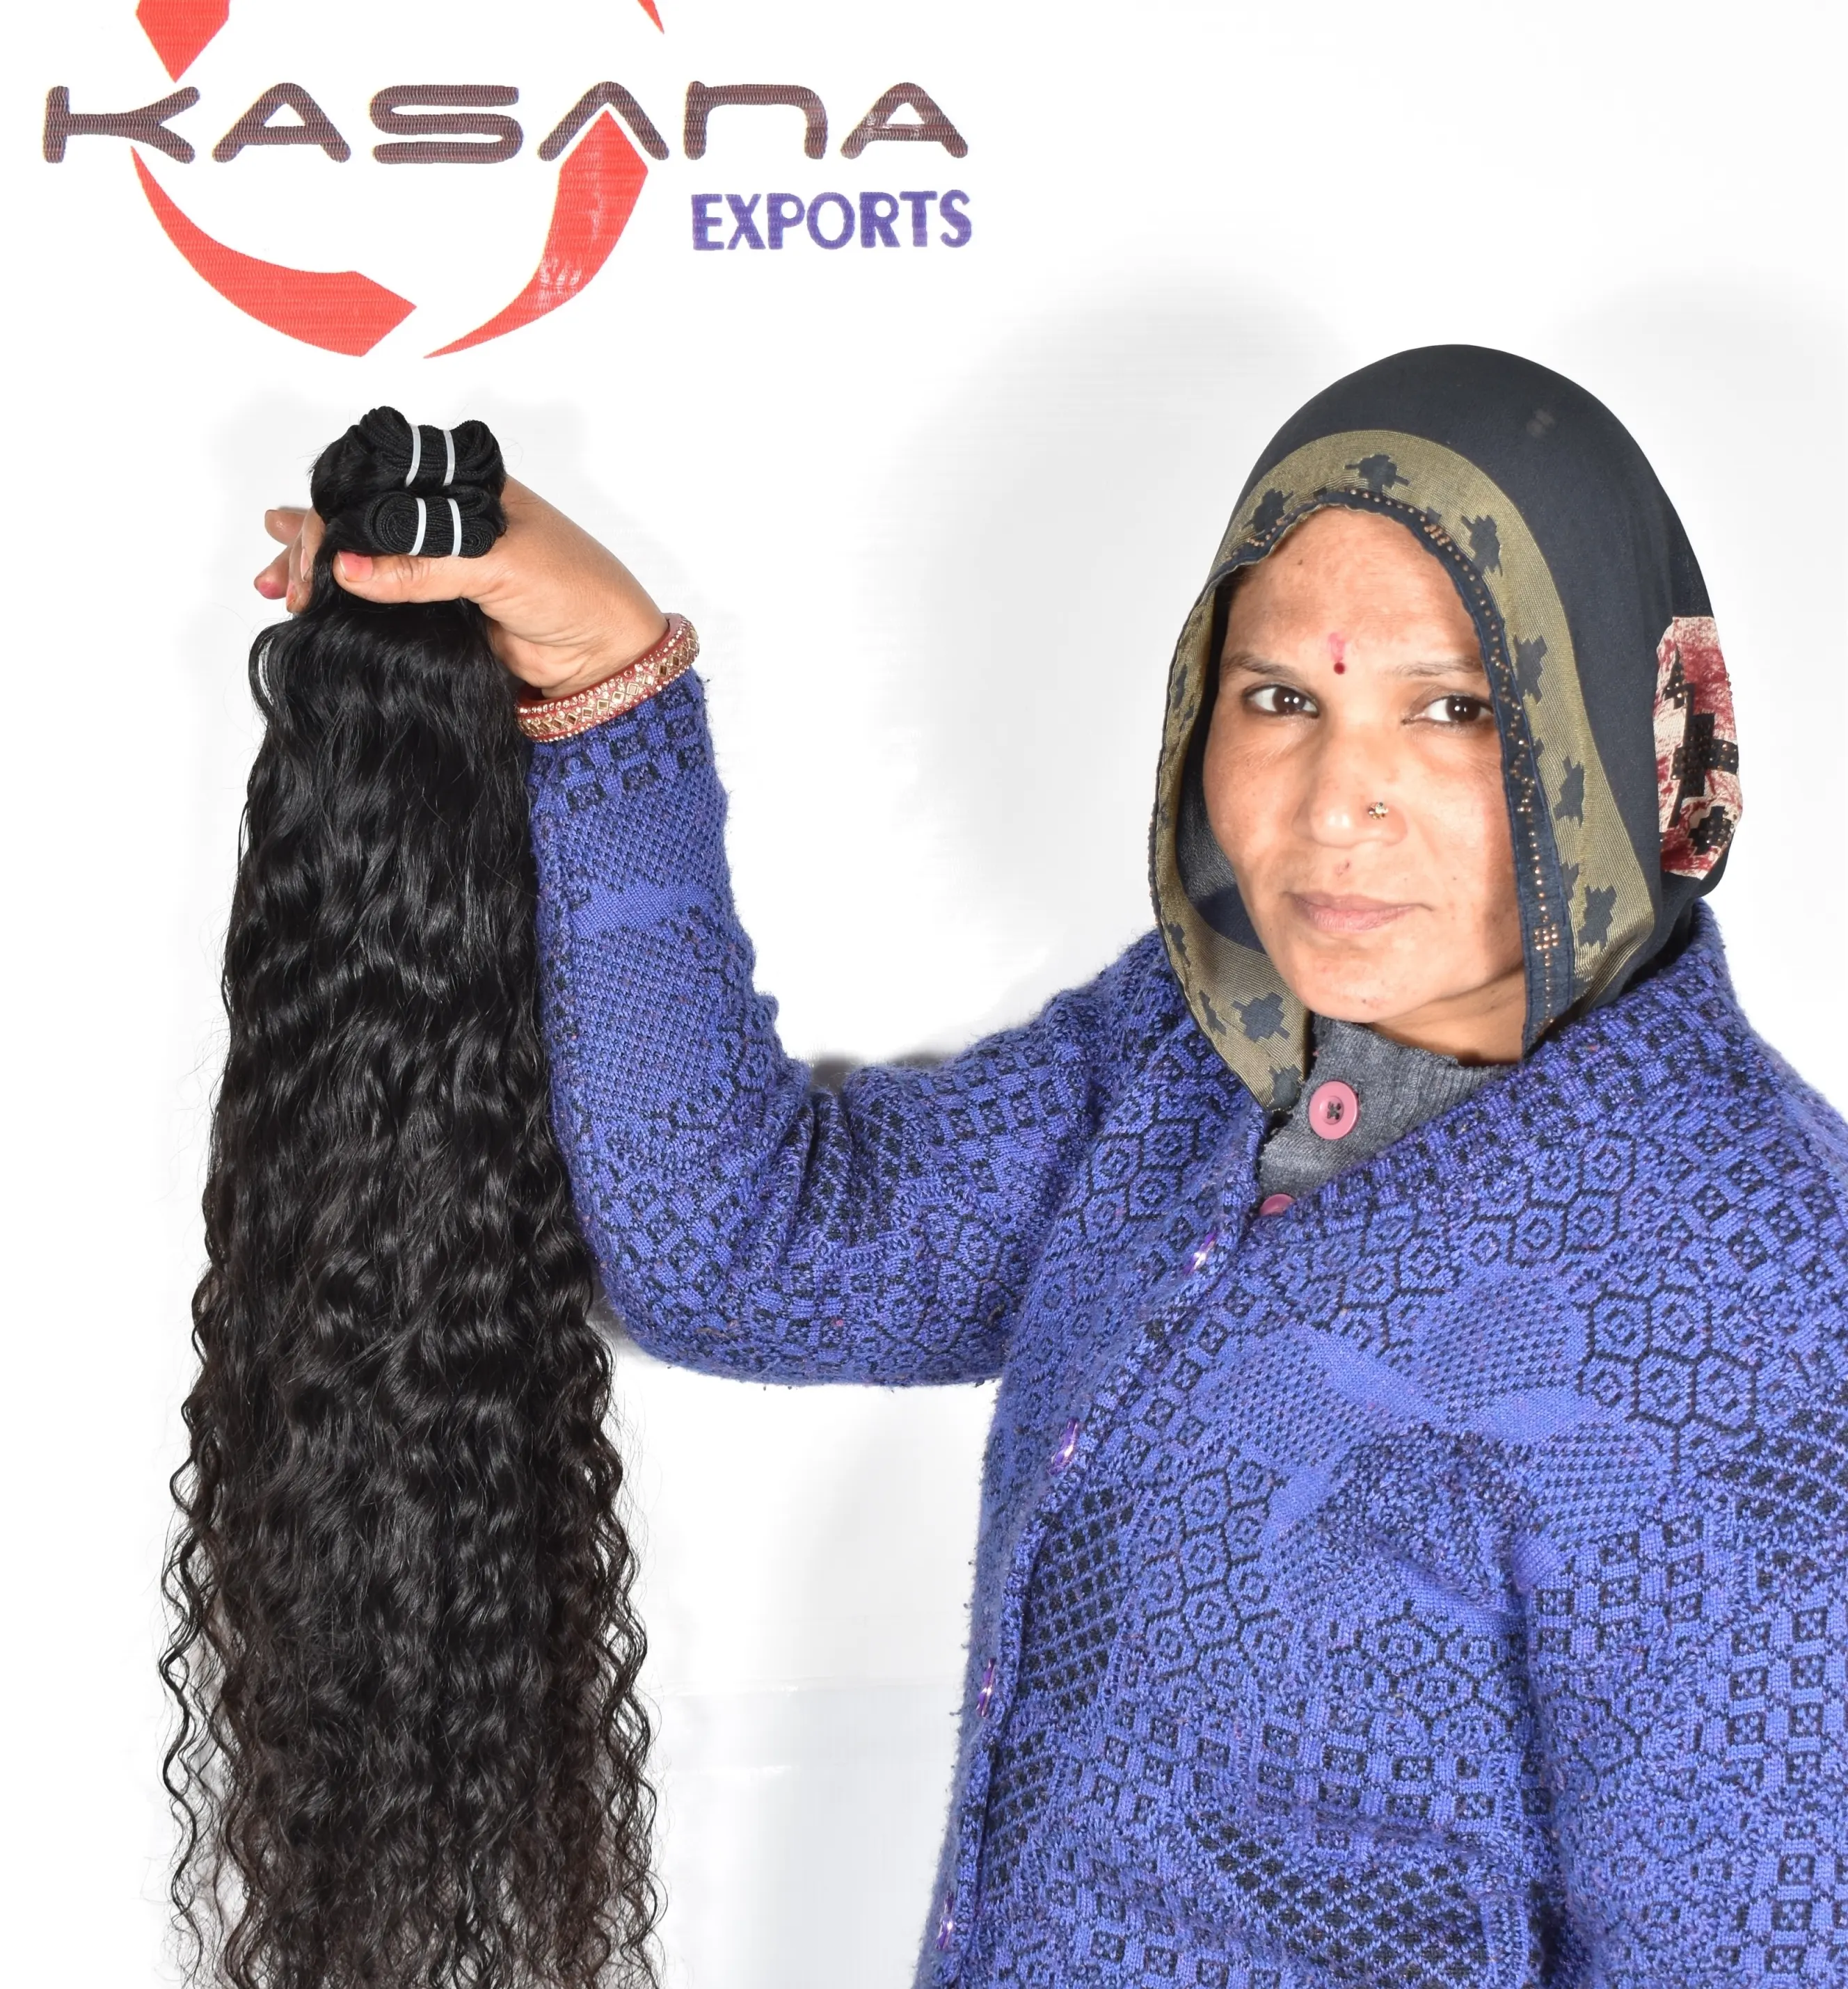 خصلة شعر طبيعي هندي مستقيم ومتموج وعصري للنساء ذوات البشرة السمراء >=50% من شعر الإنسان بأطول نسبة